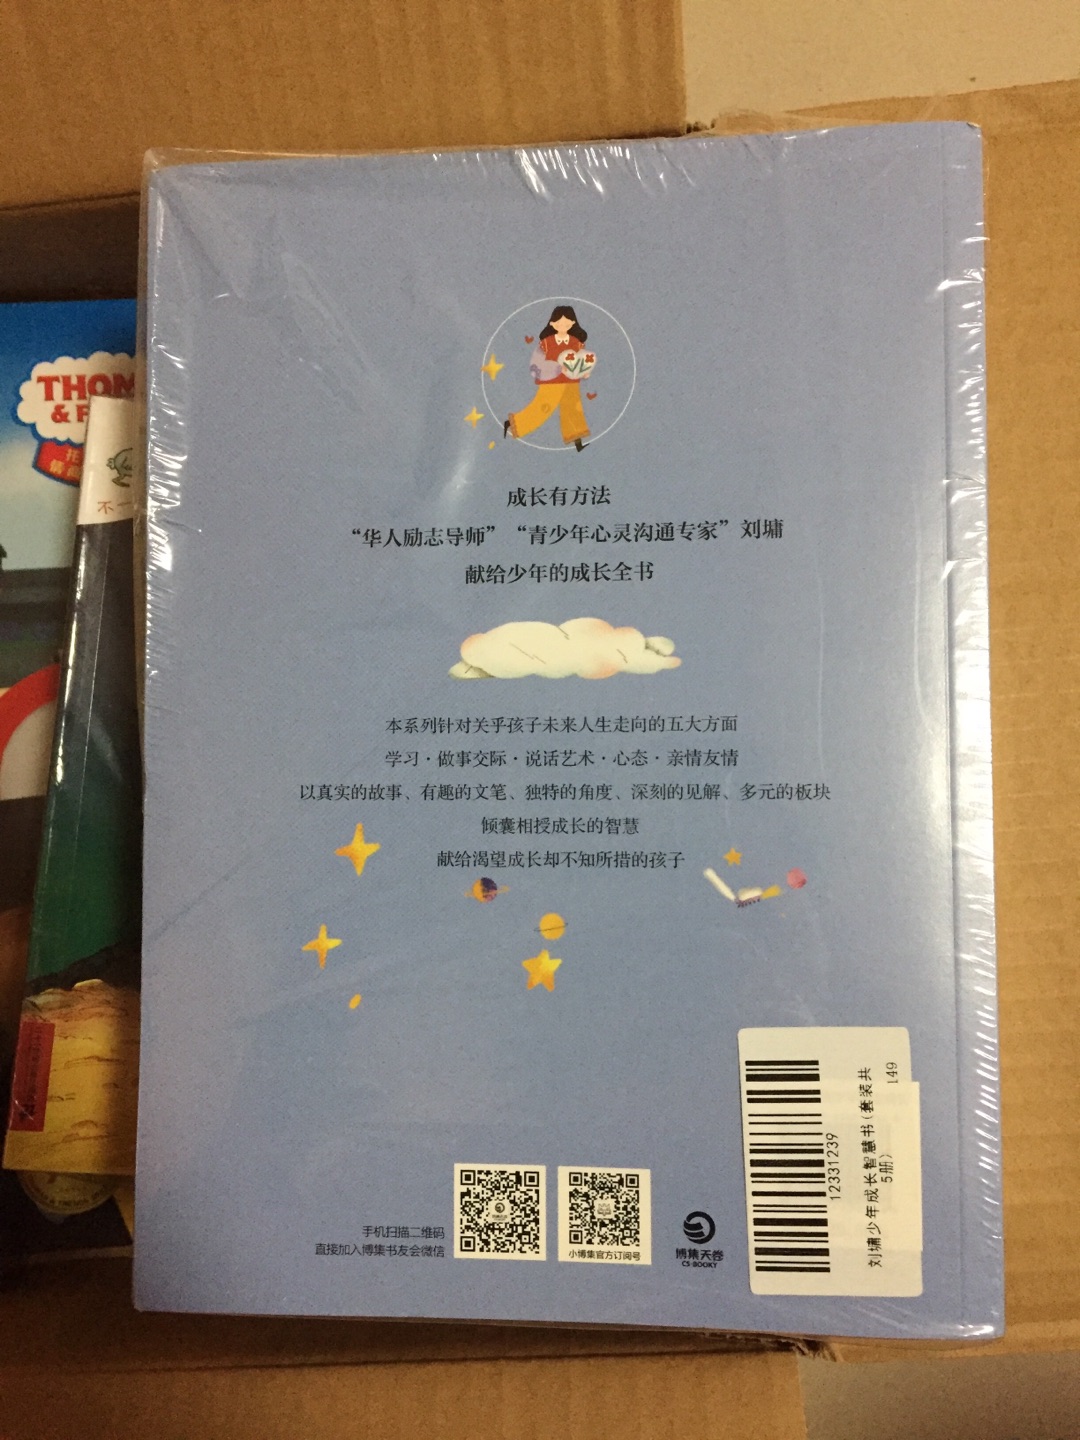 一直喜欢刘墉先生的著作，这套书籍可以让我和孩子一起学习、成长！独立包装，编桢都好，满意！